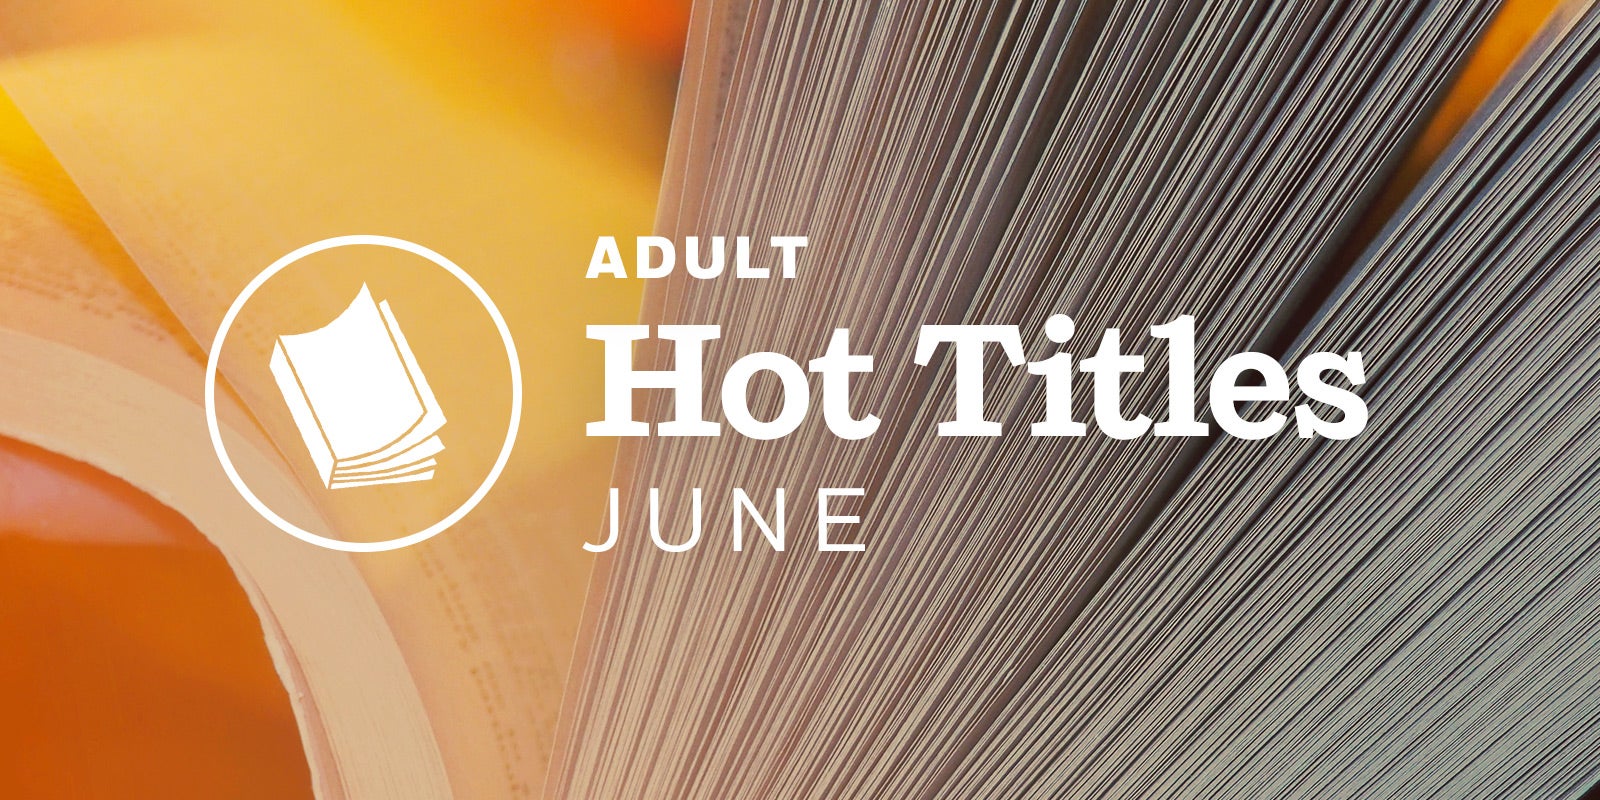 June Adult Hot Titles